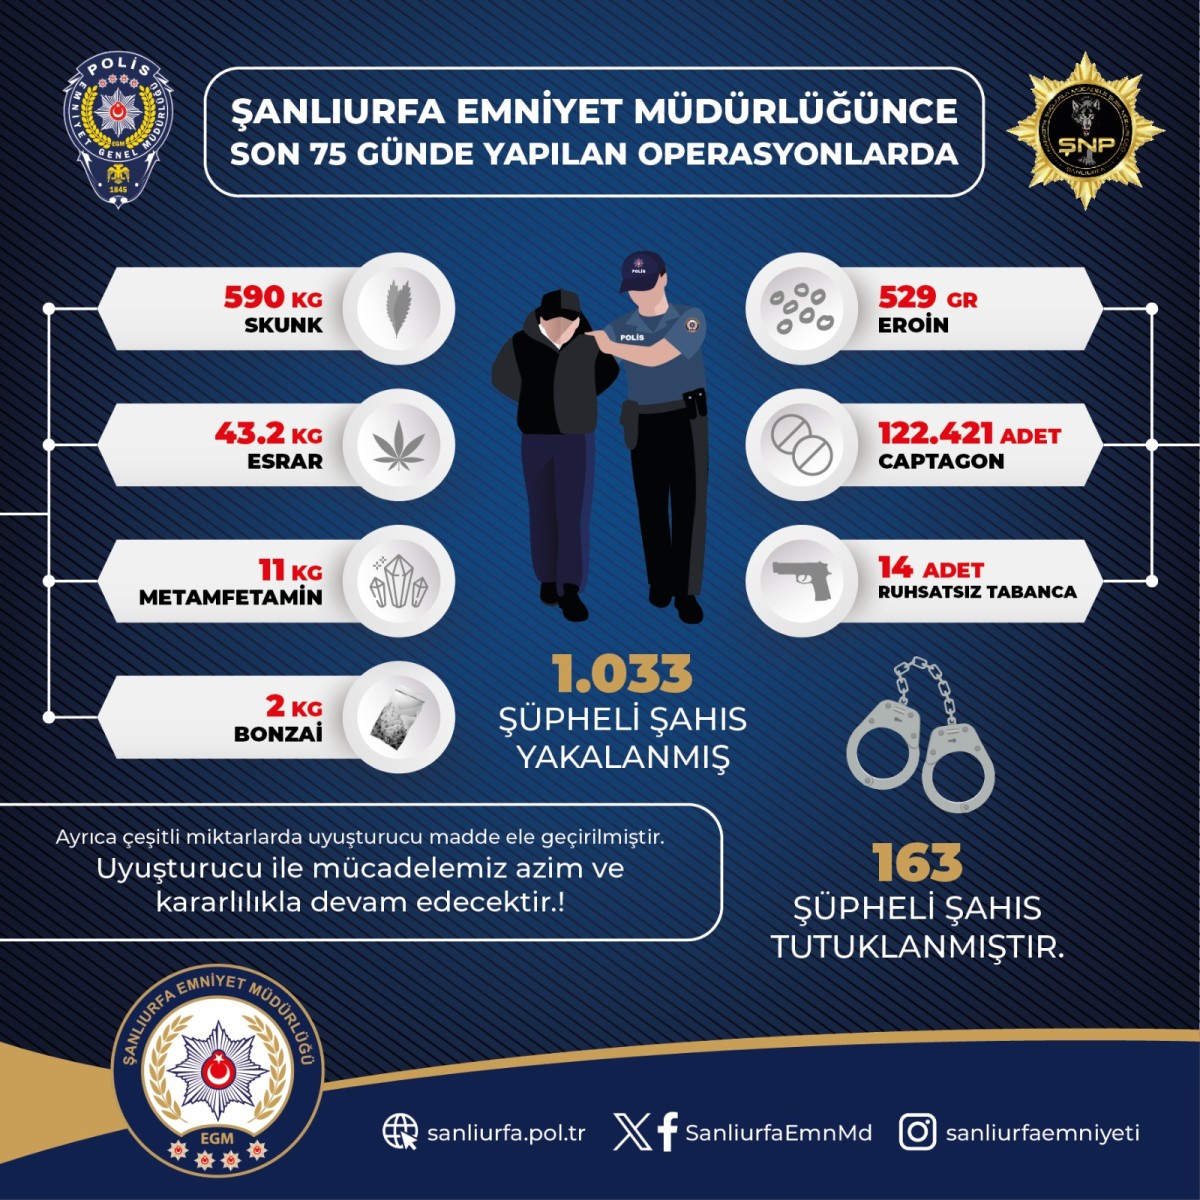 Şanlıurfa' polisi uyuşturucu tacirlerine büyük darbe 163 tutulama 